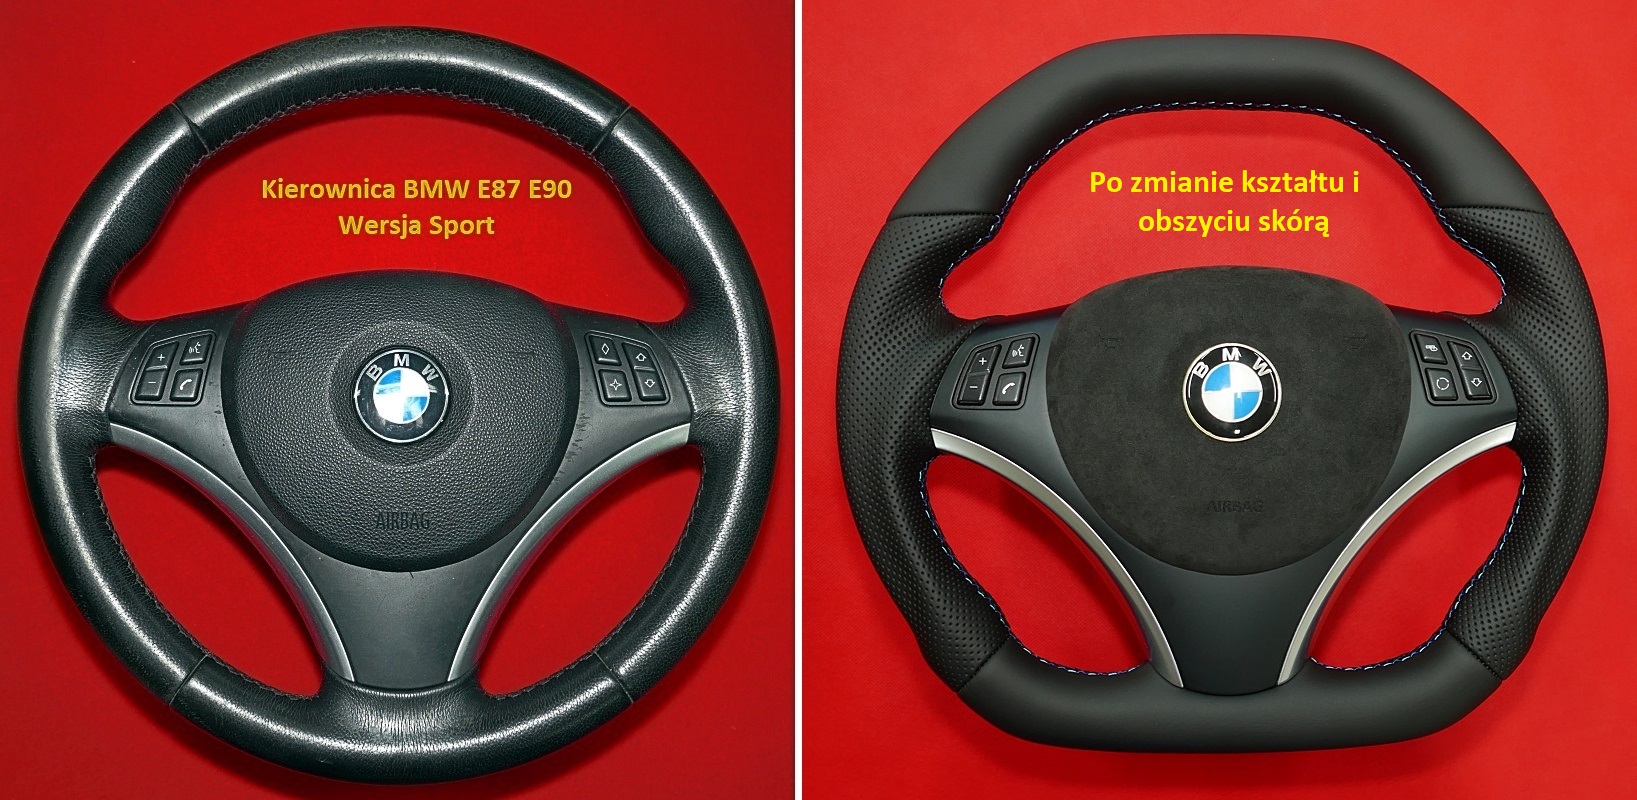 Tuning modyfikacja zmiana kasztu obszycie skórą kierownica BMW E90